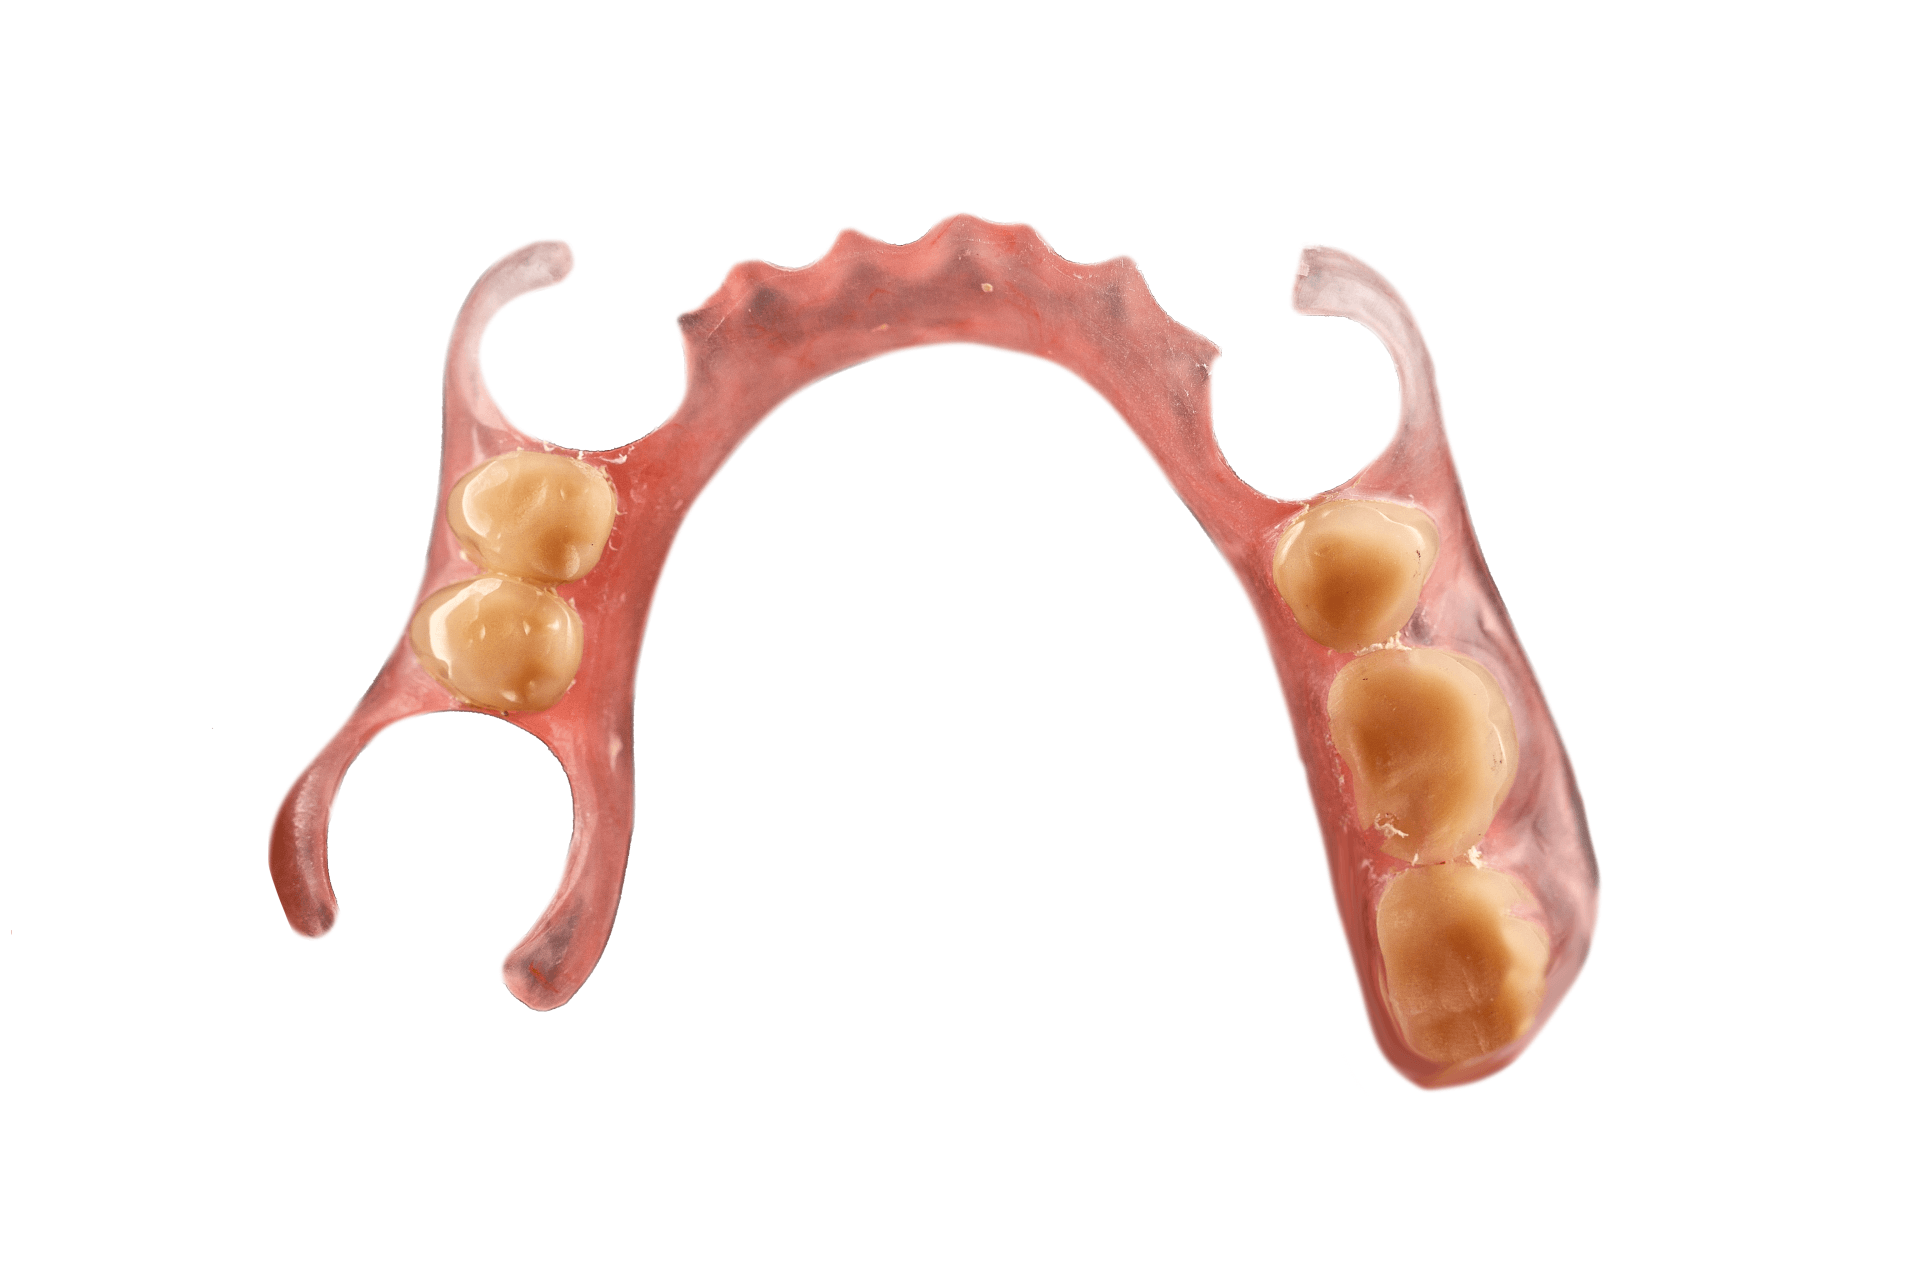 partial dentures - advantages and disadvantages